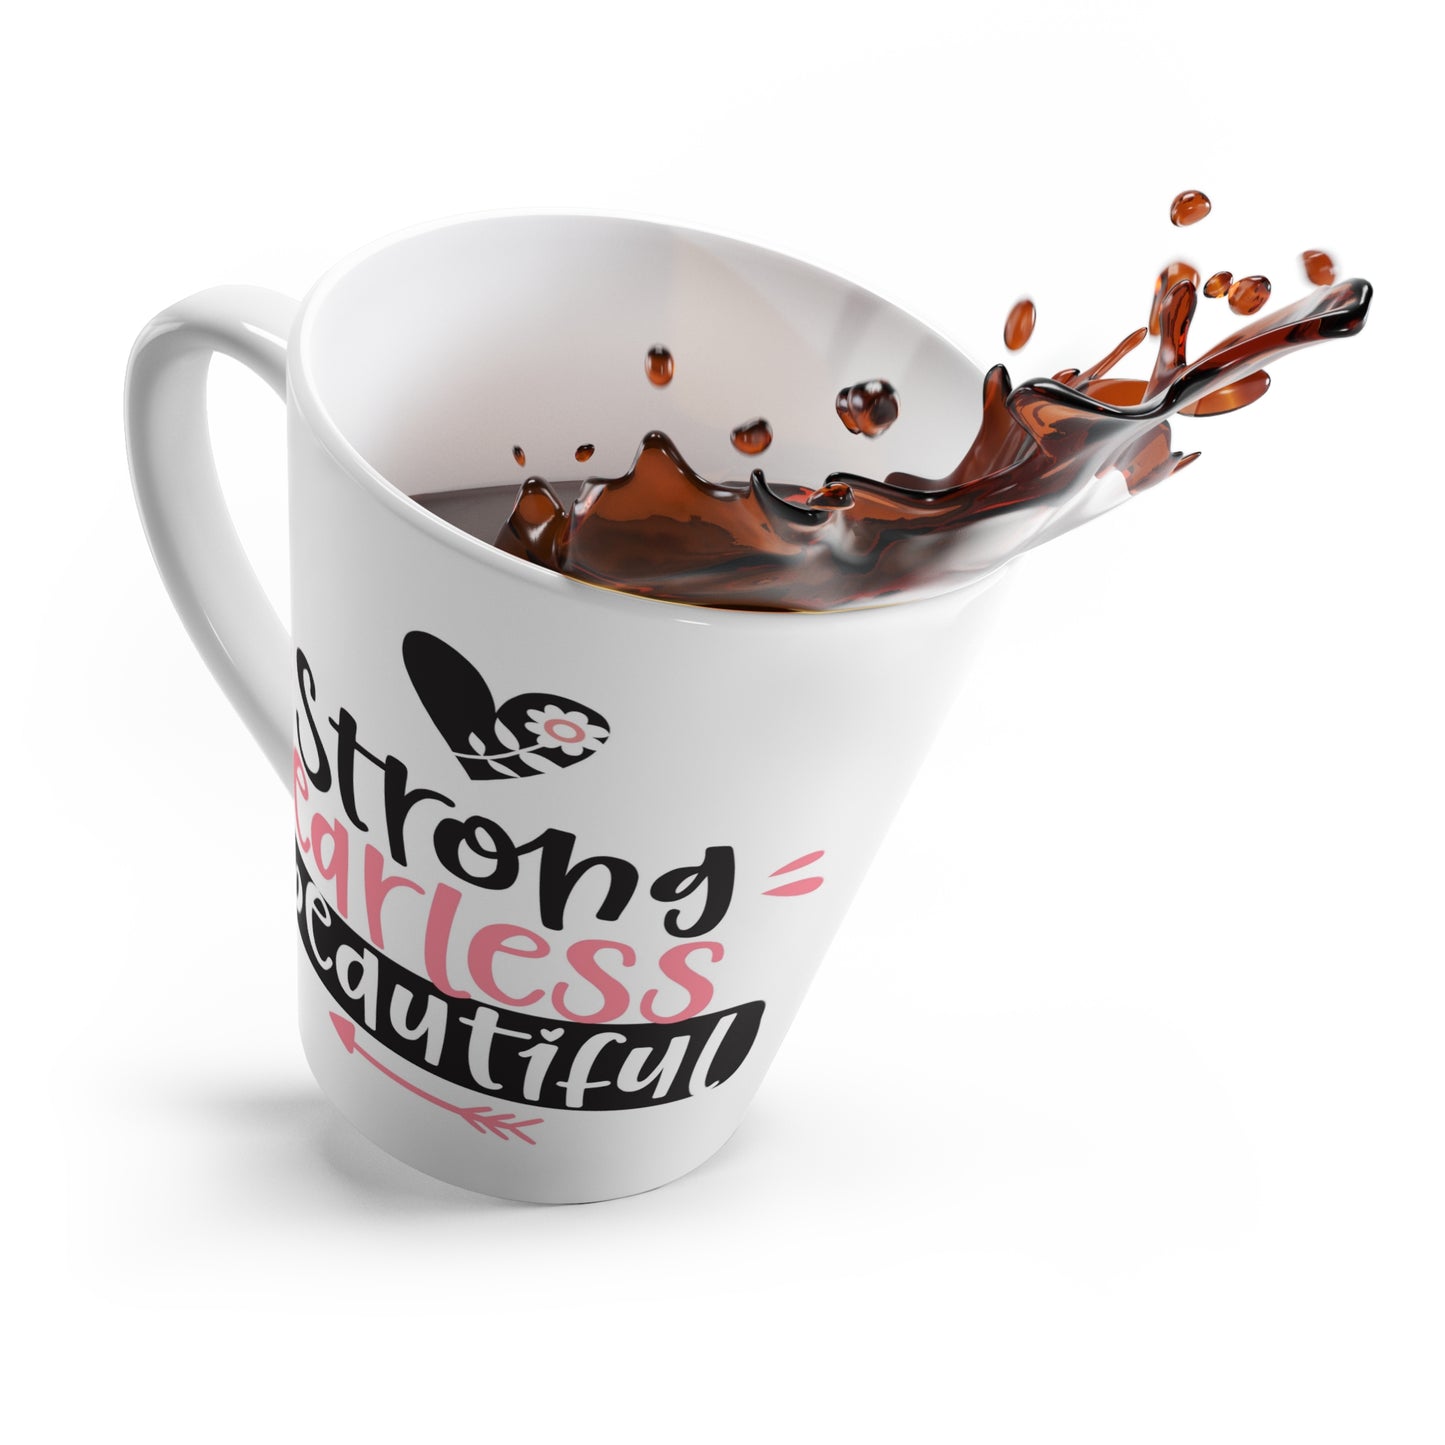 Strong - fearless - beautiful Latte Mug